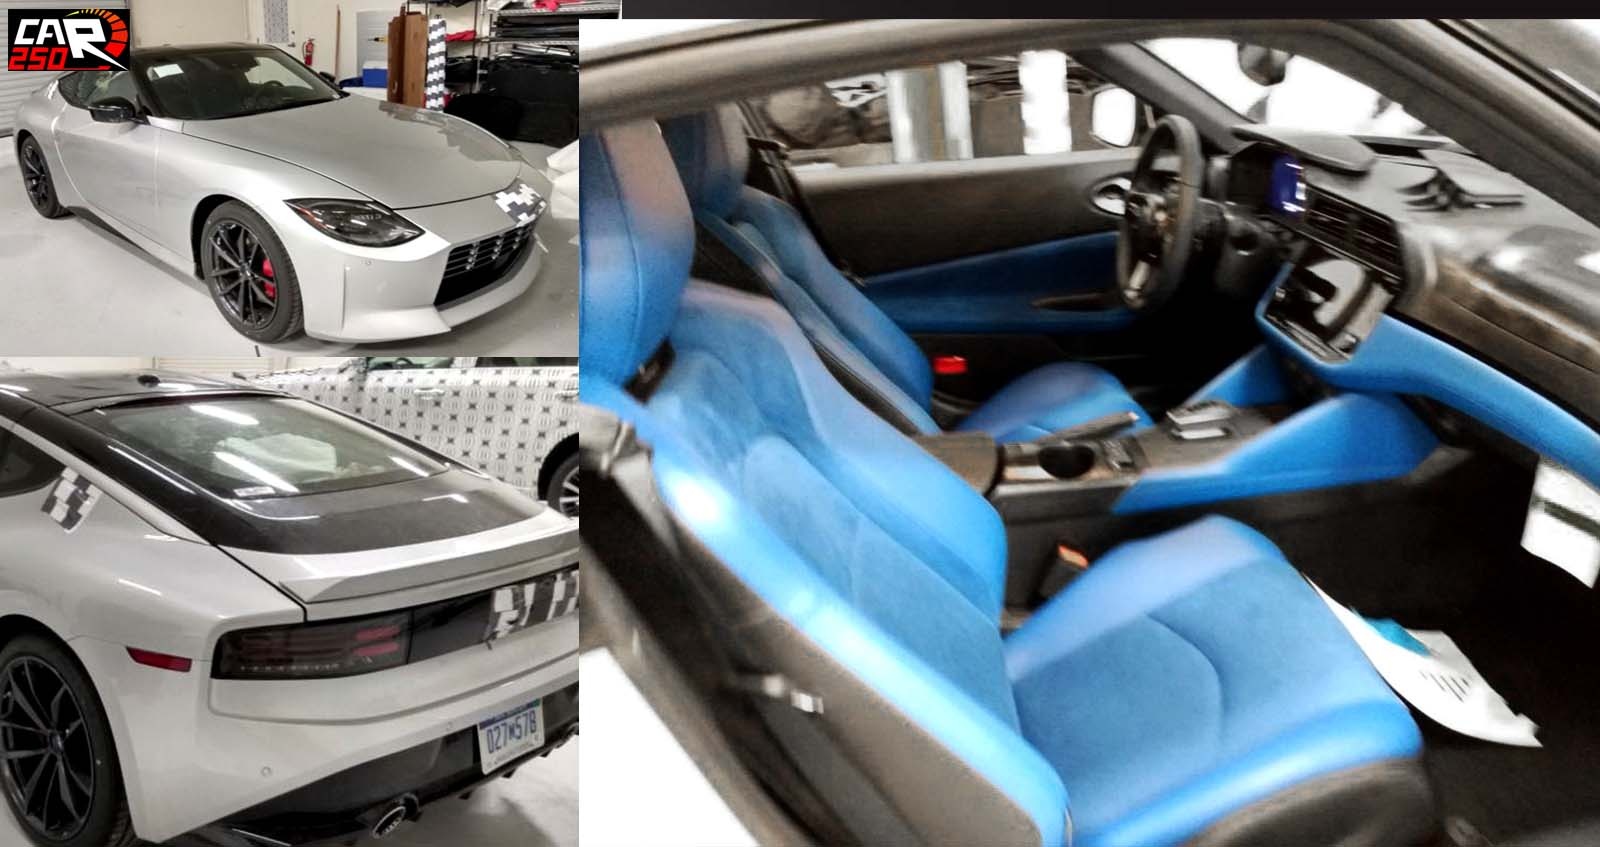 ภาพคันจริง Nissan 400Z เวอร์ชั่นจำหน่าย ภายในสีฟ้า-ดำ